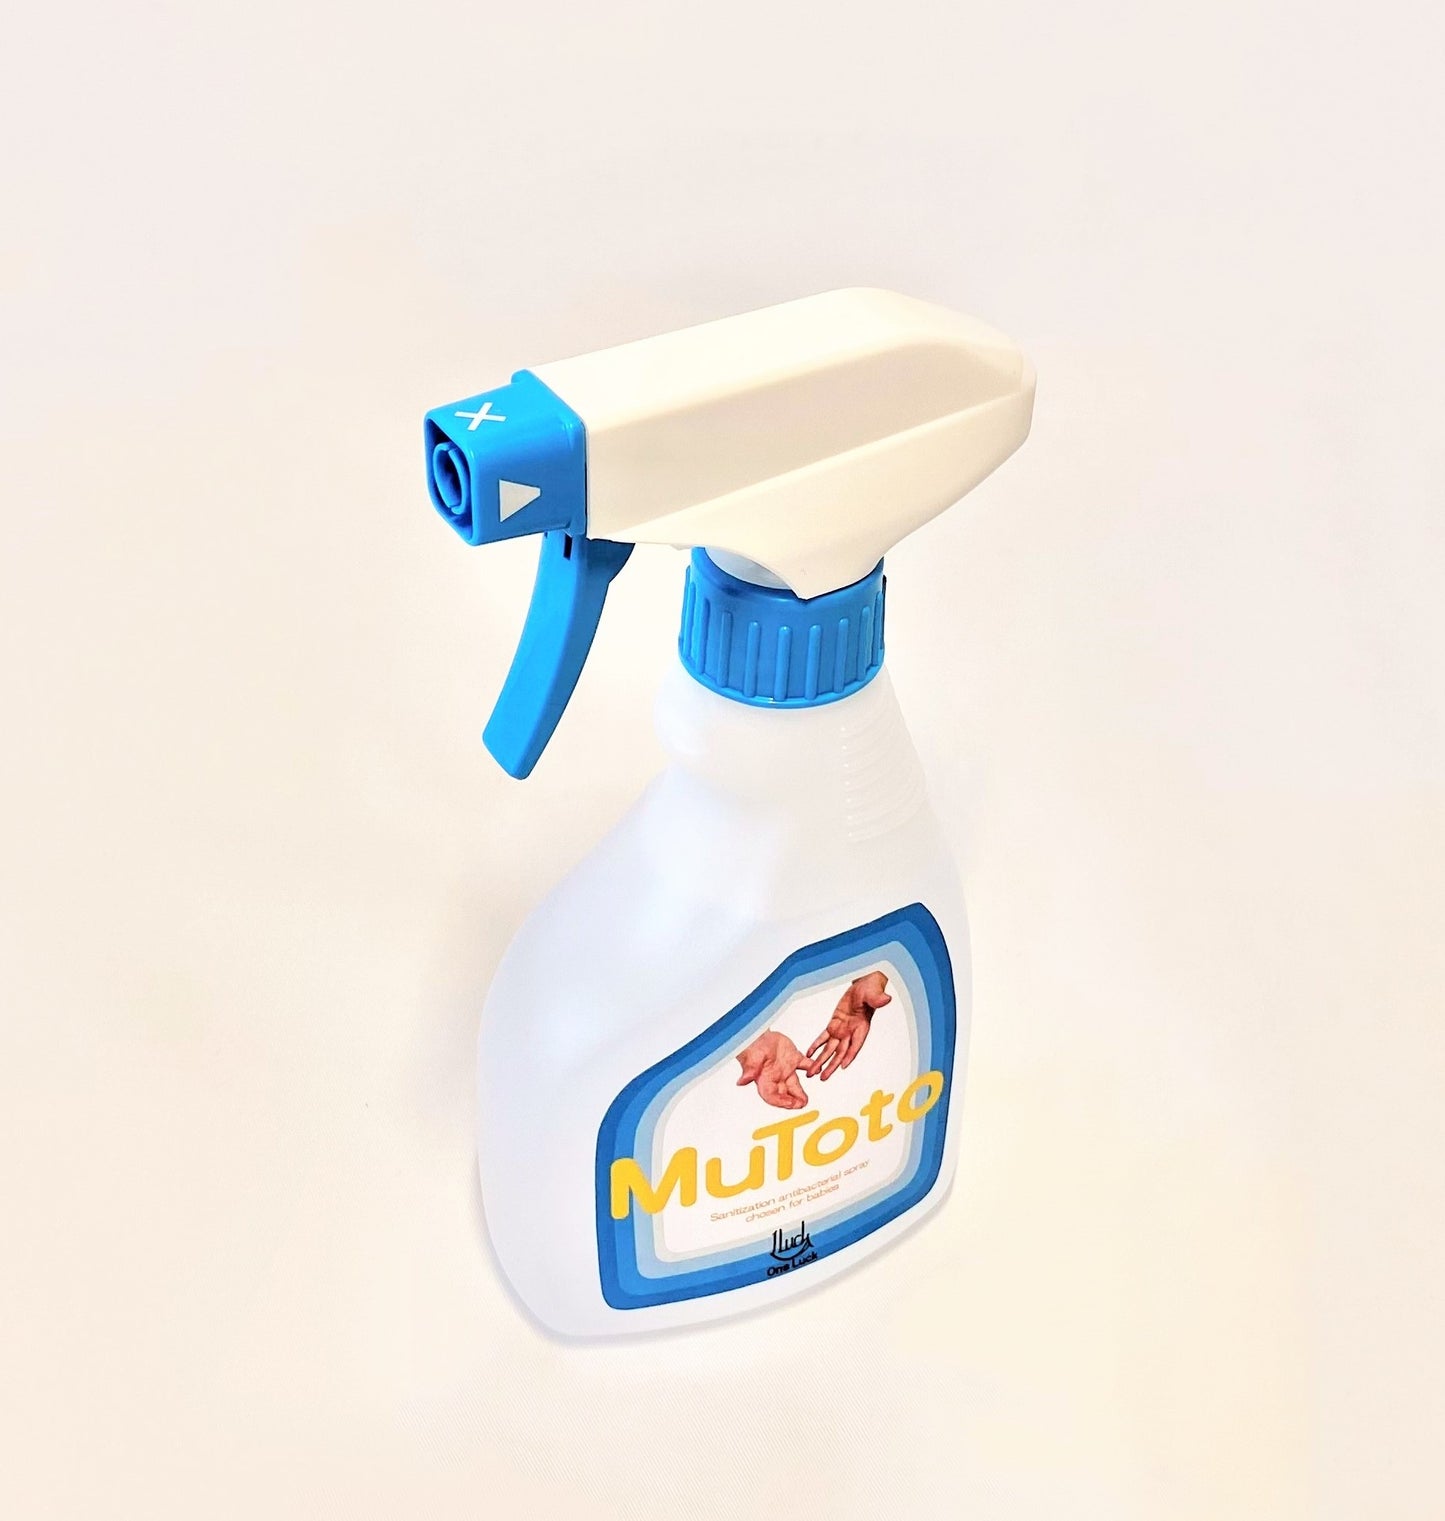 除菌スプレー：MuToto(ムトト) ※アルコール・界面活性剤不使用